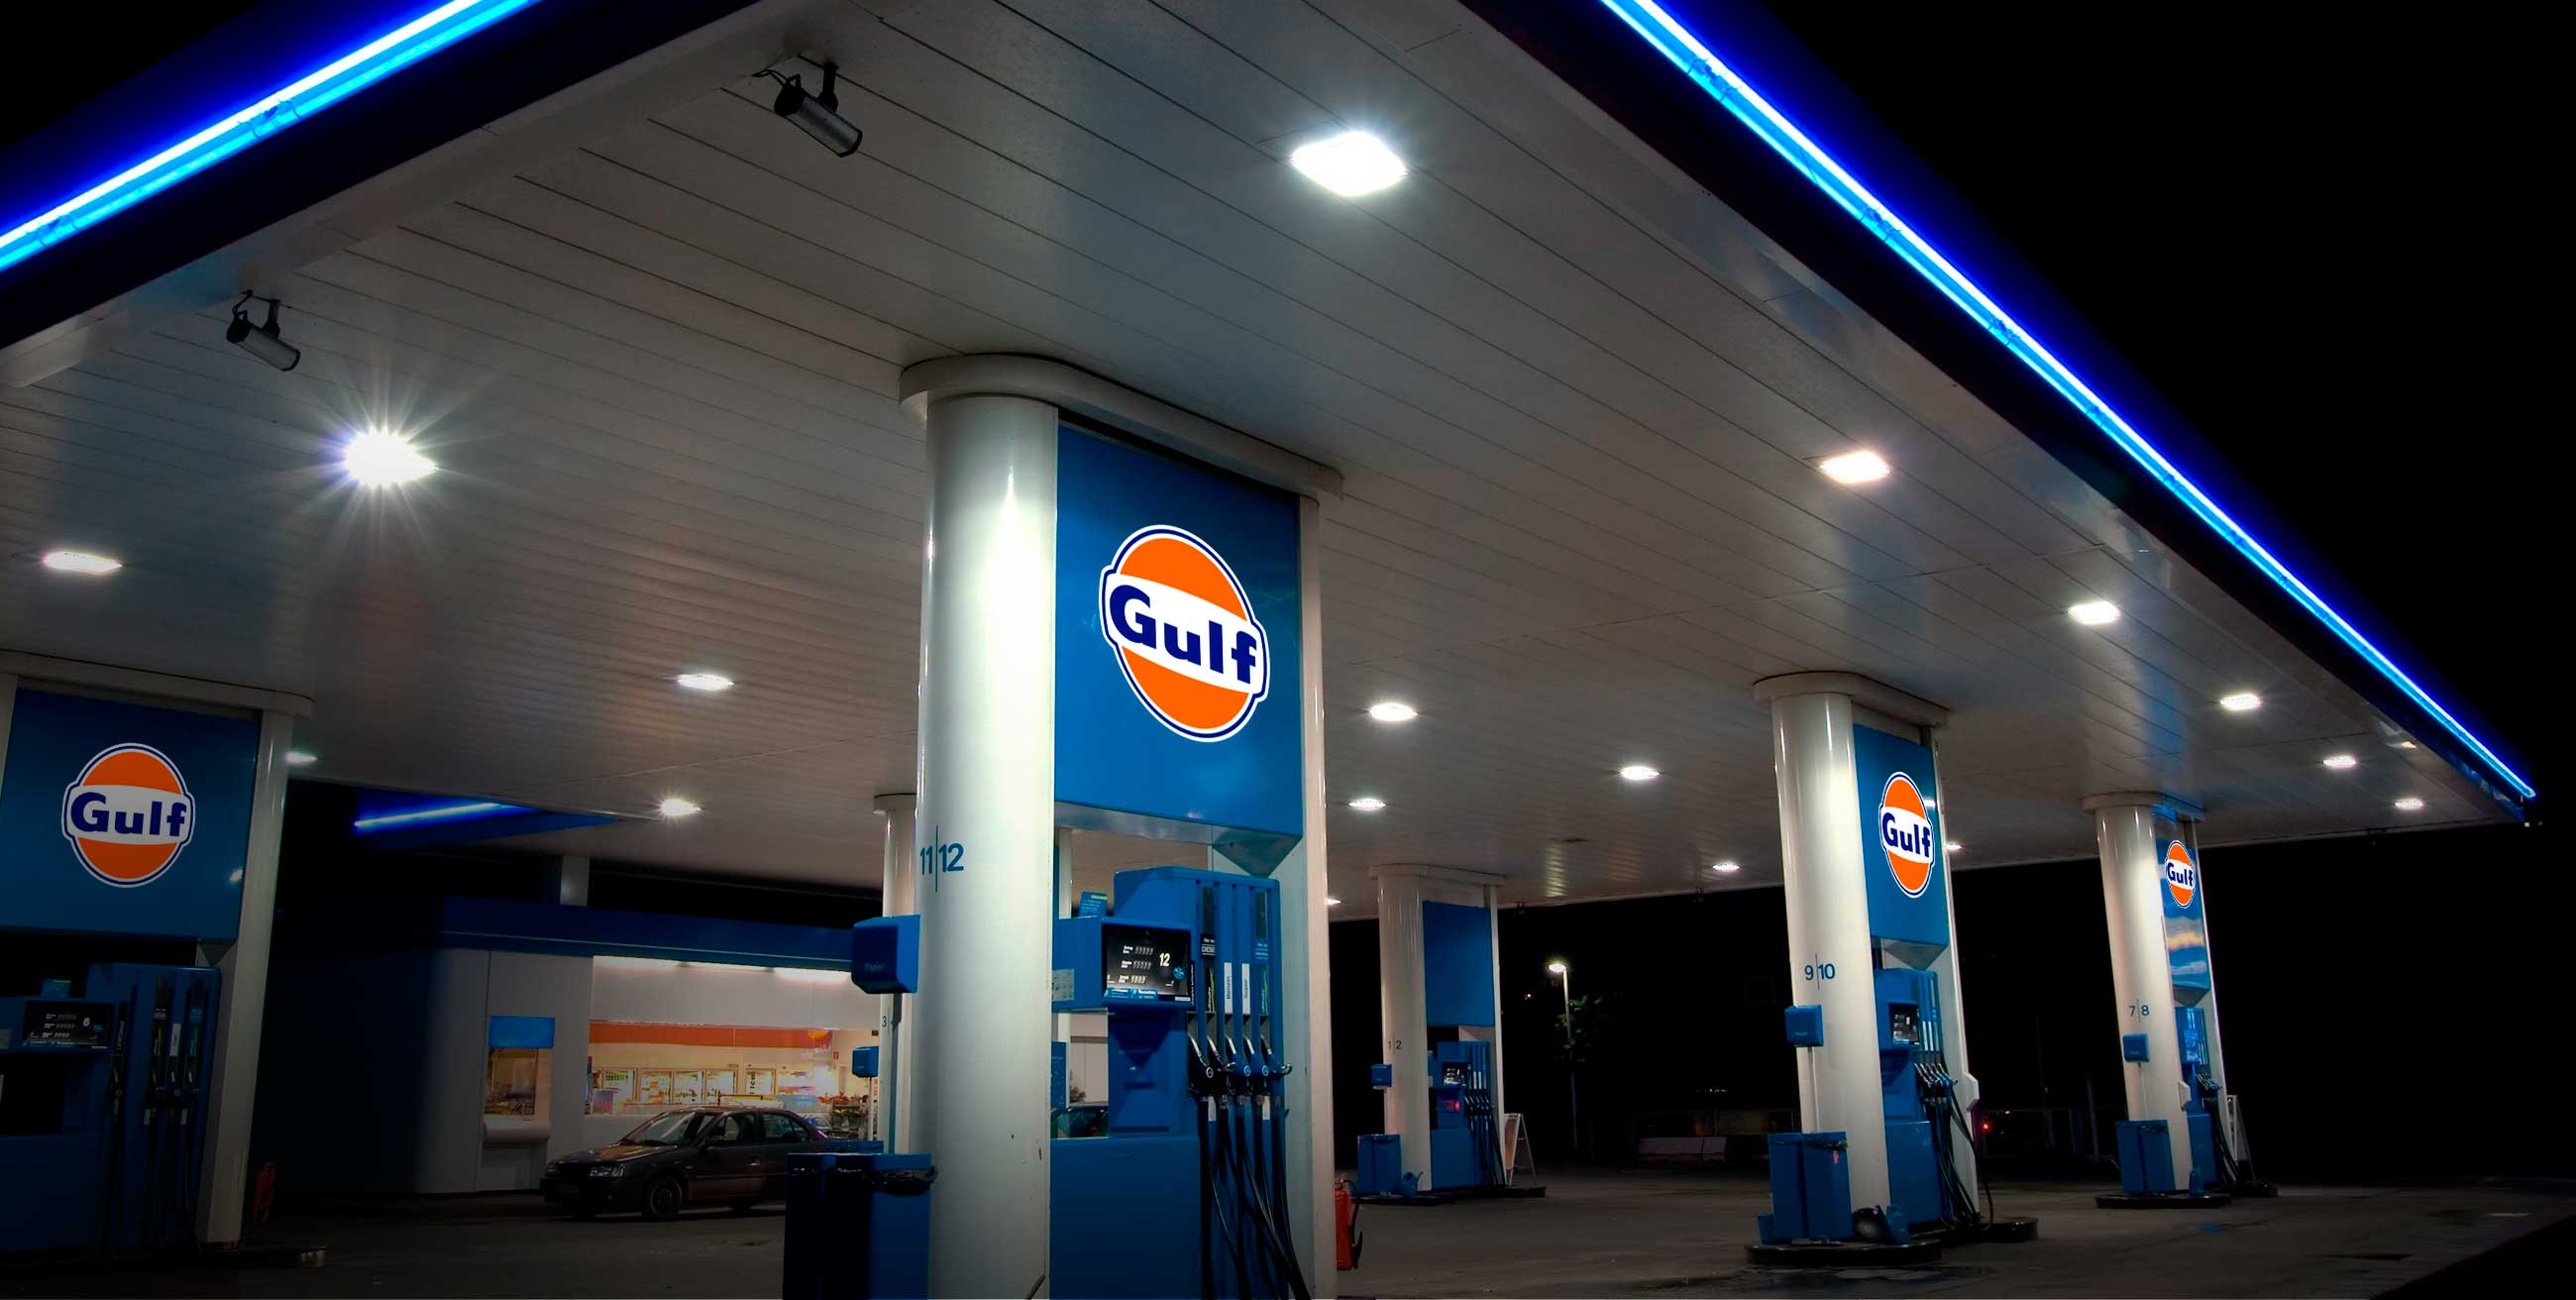  Gulf detiene conversión de gasolineras por incertidumbre